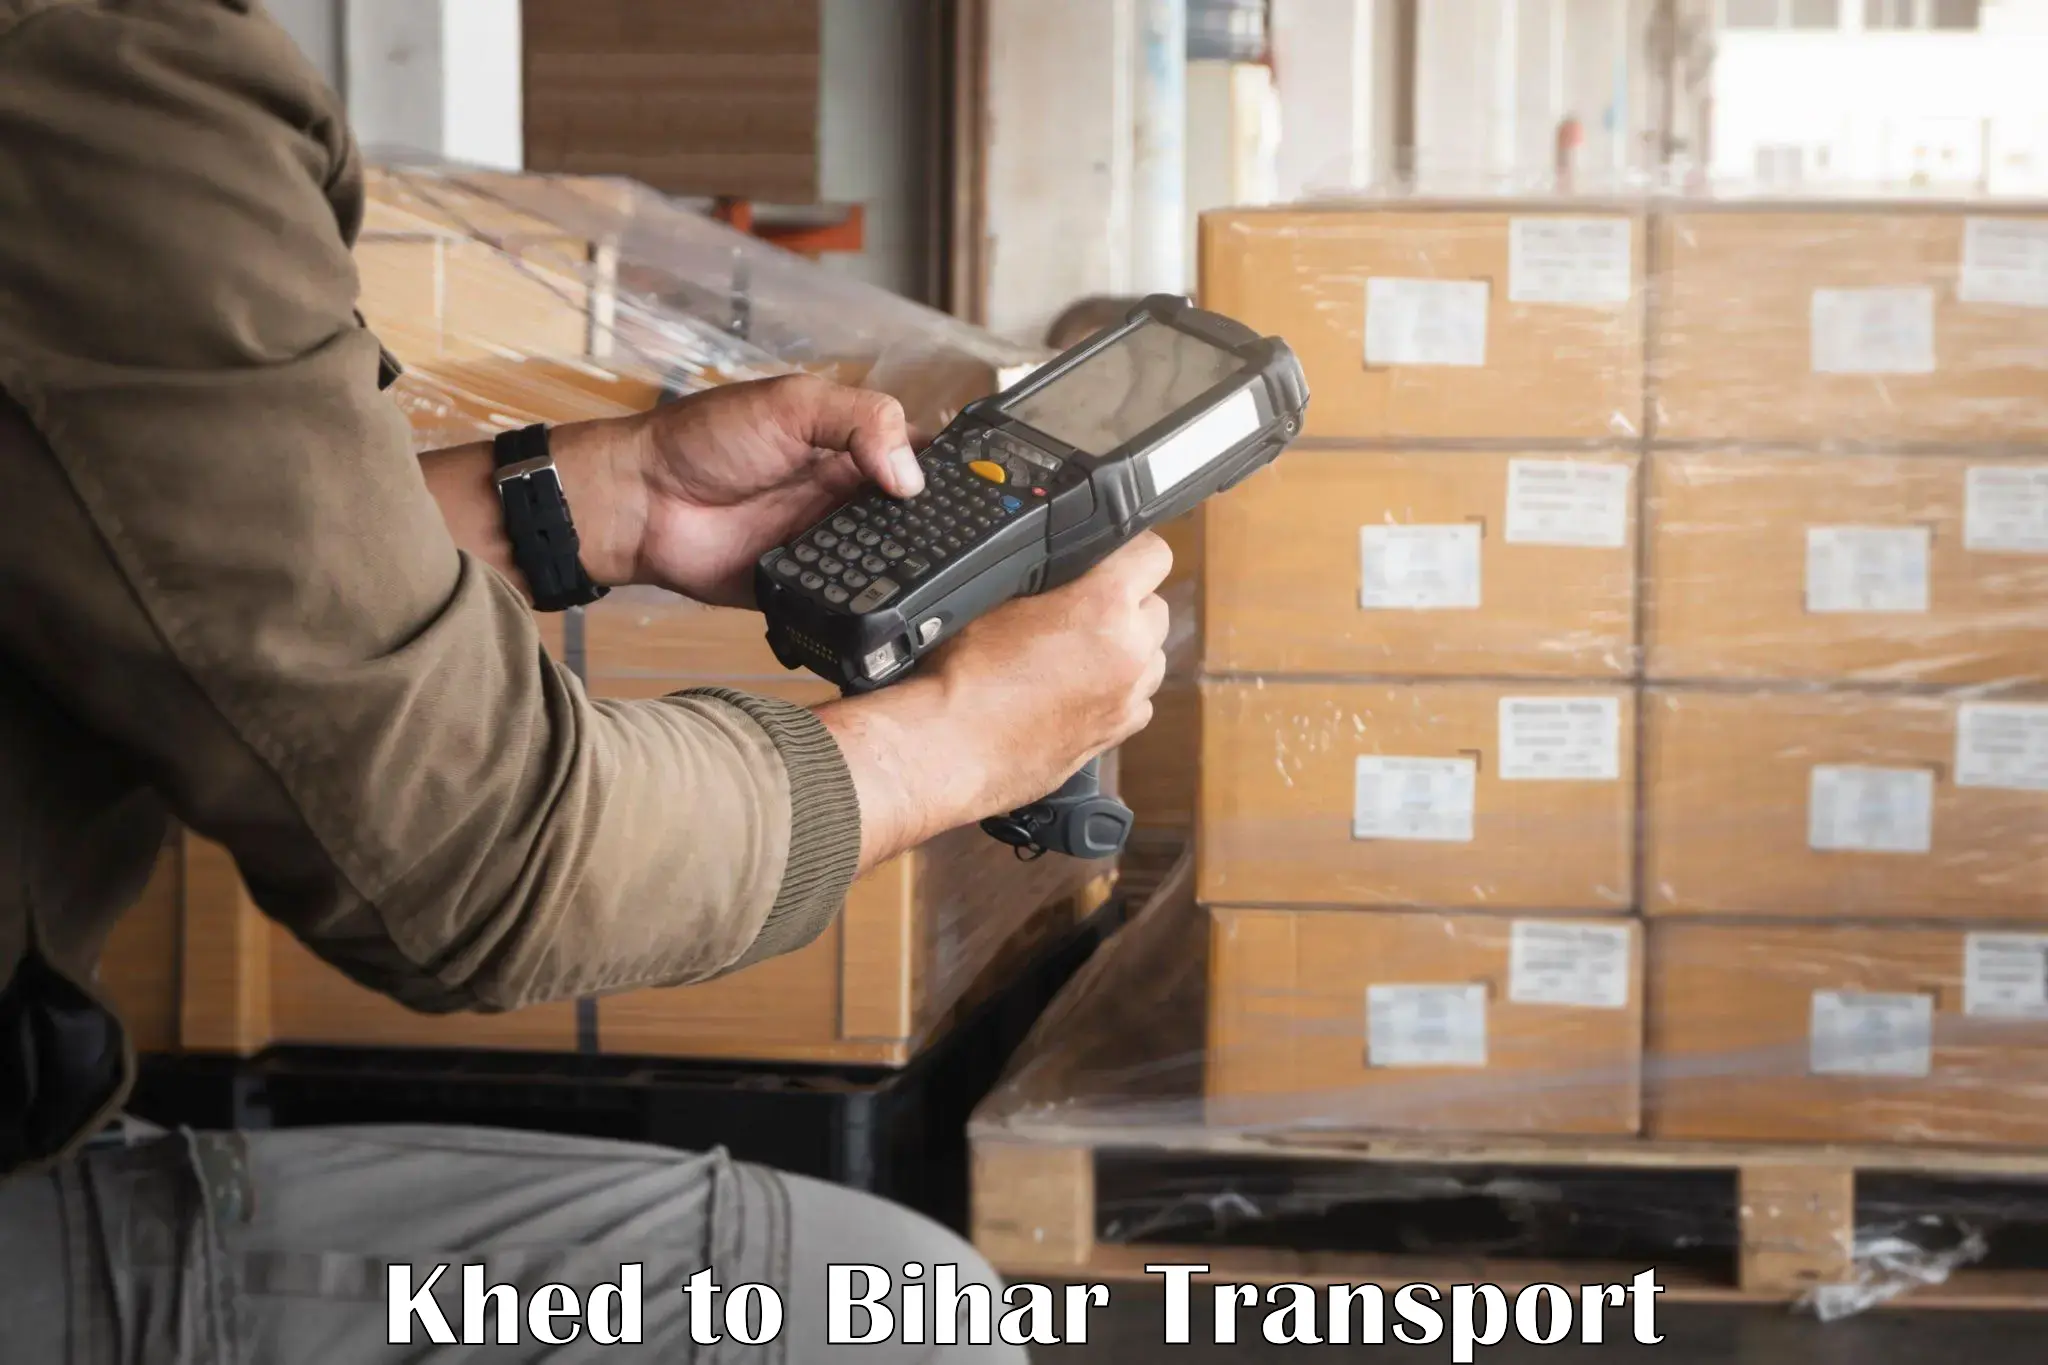 Logistics transportation services Khed to Khagaria